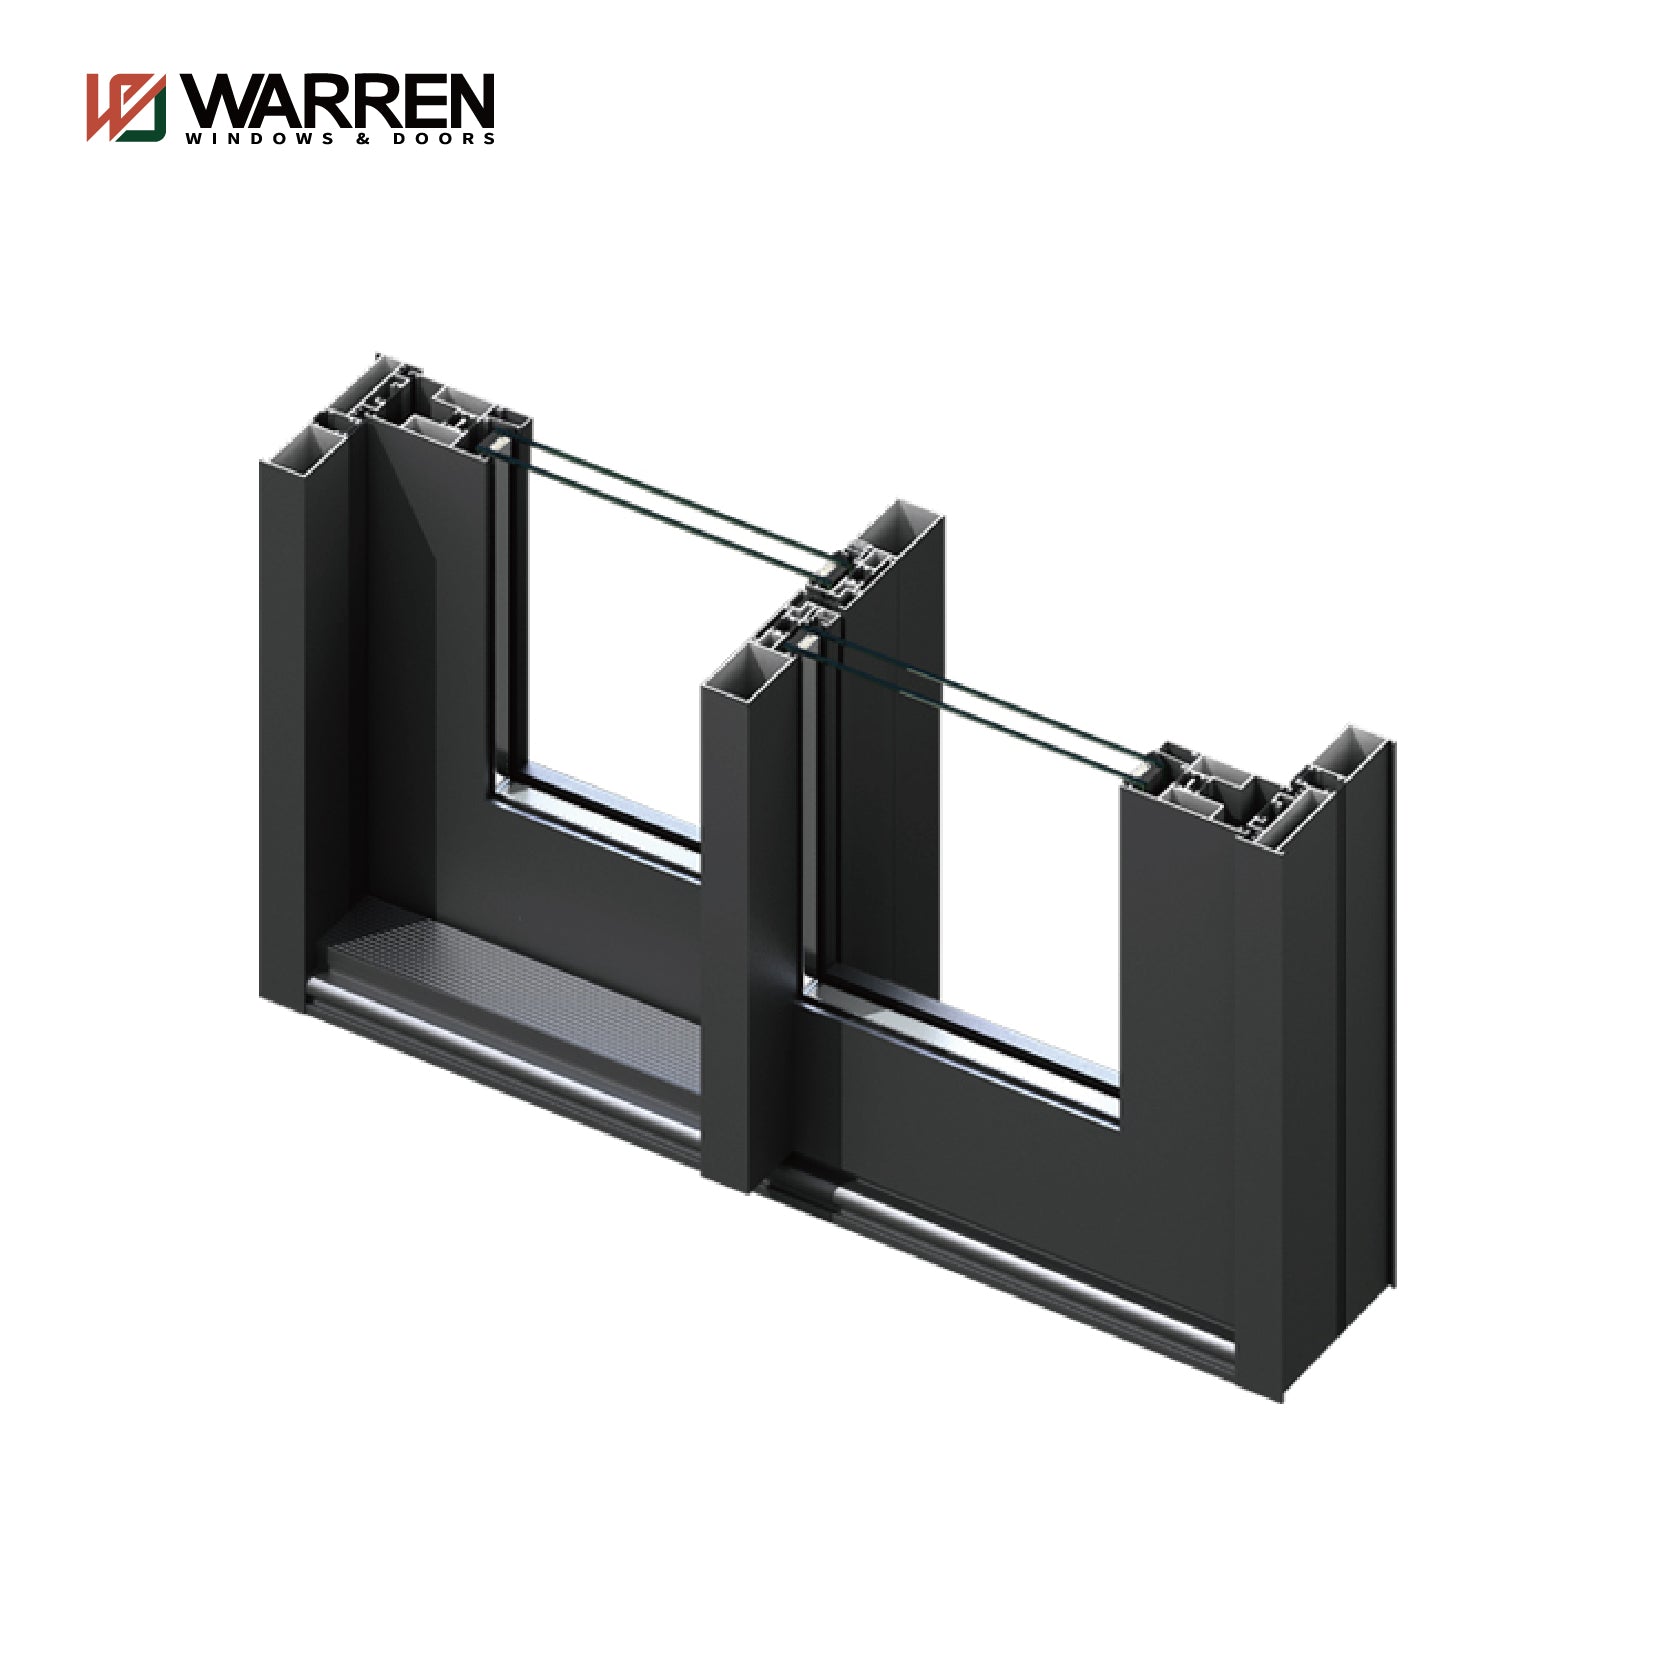 Warren New China Manufacturer Double Glass Interior Sliding Glass Door Aluminium Sliding Door